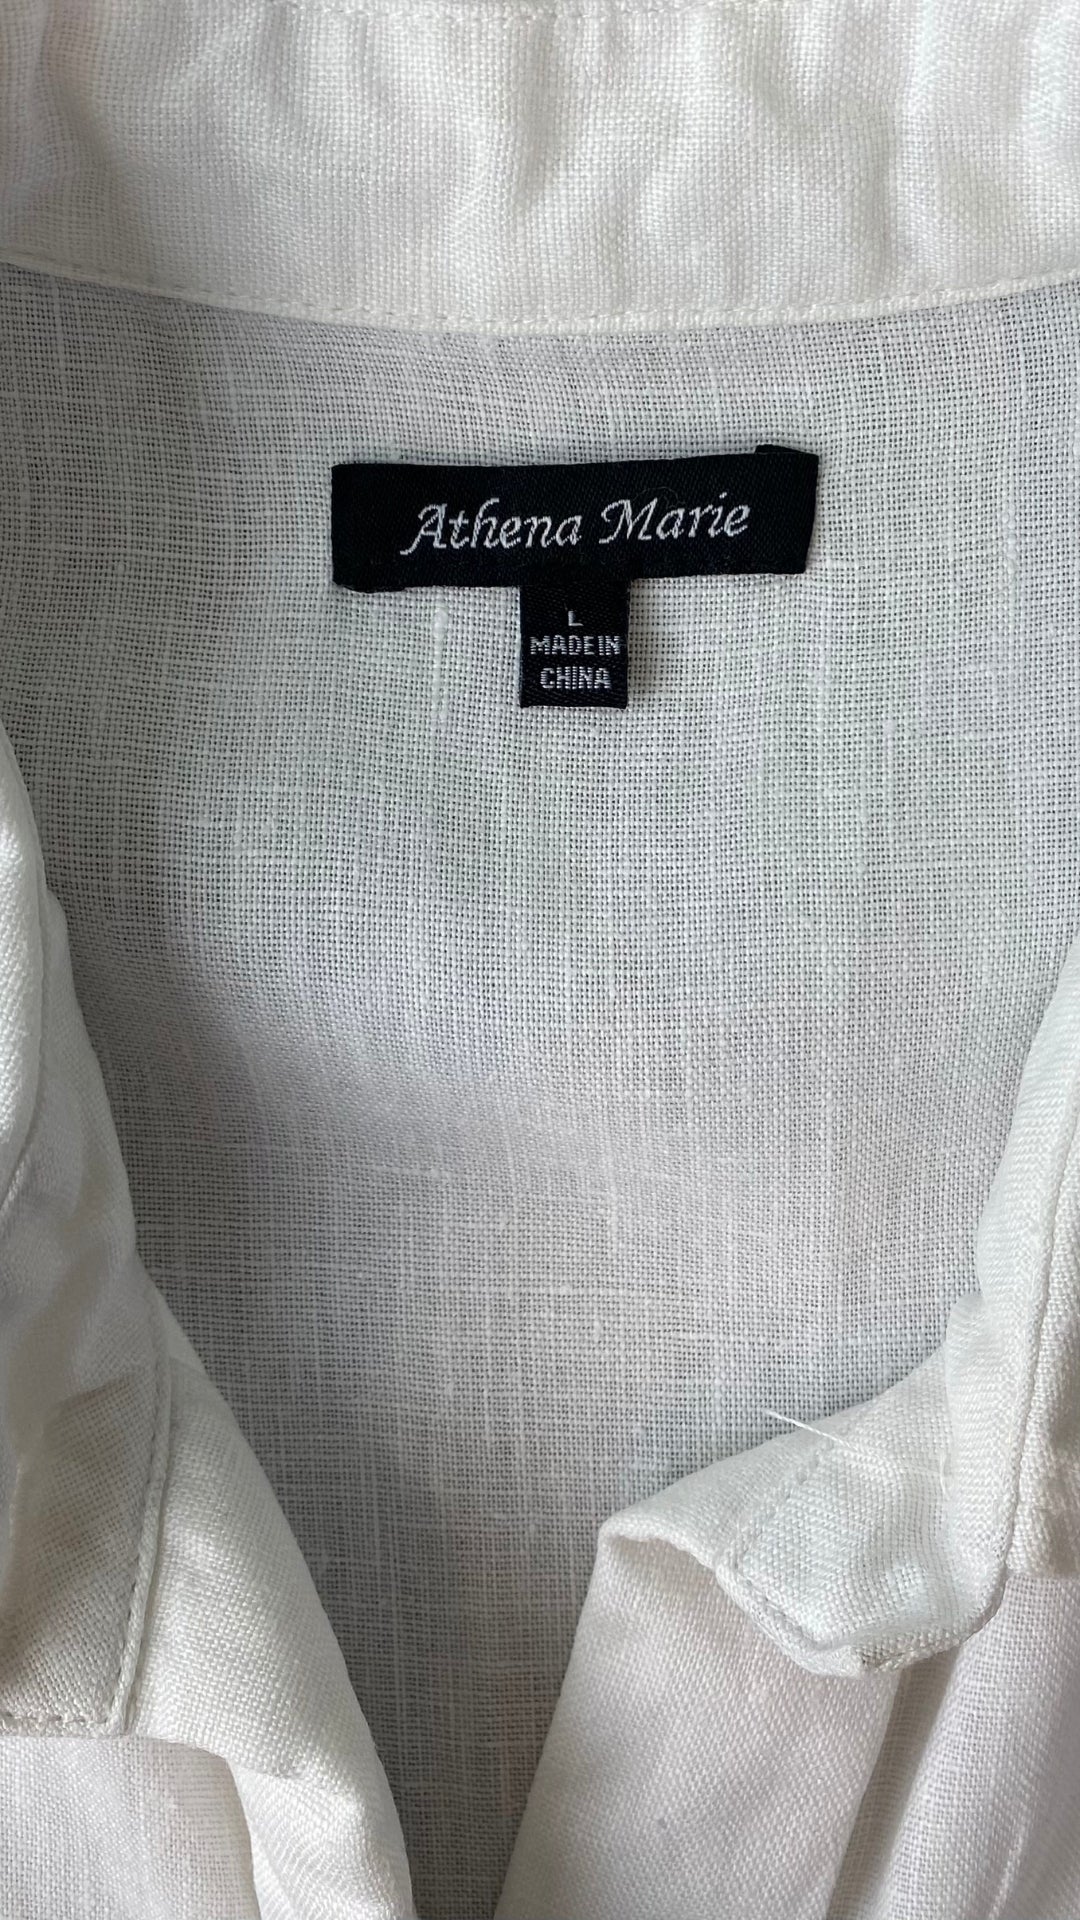 Robe boutonnée en lin asymétrique Athena Marie, taille large. Vue de l'étiquette de marque.